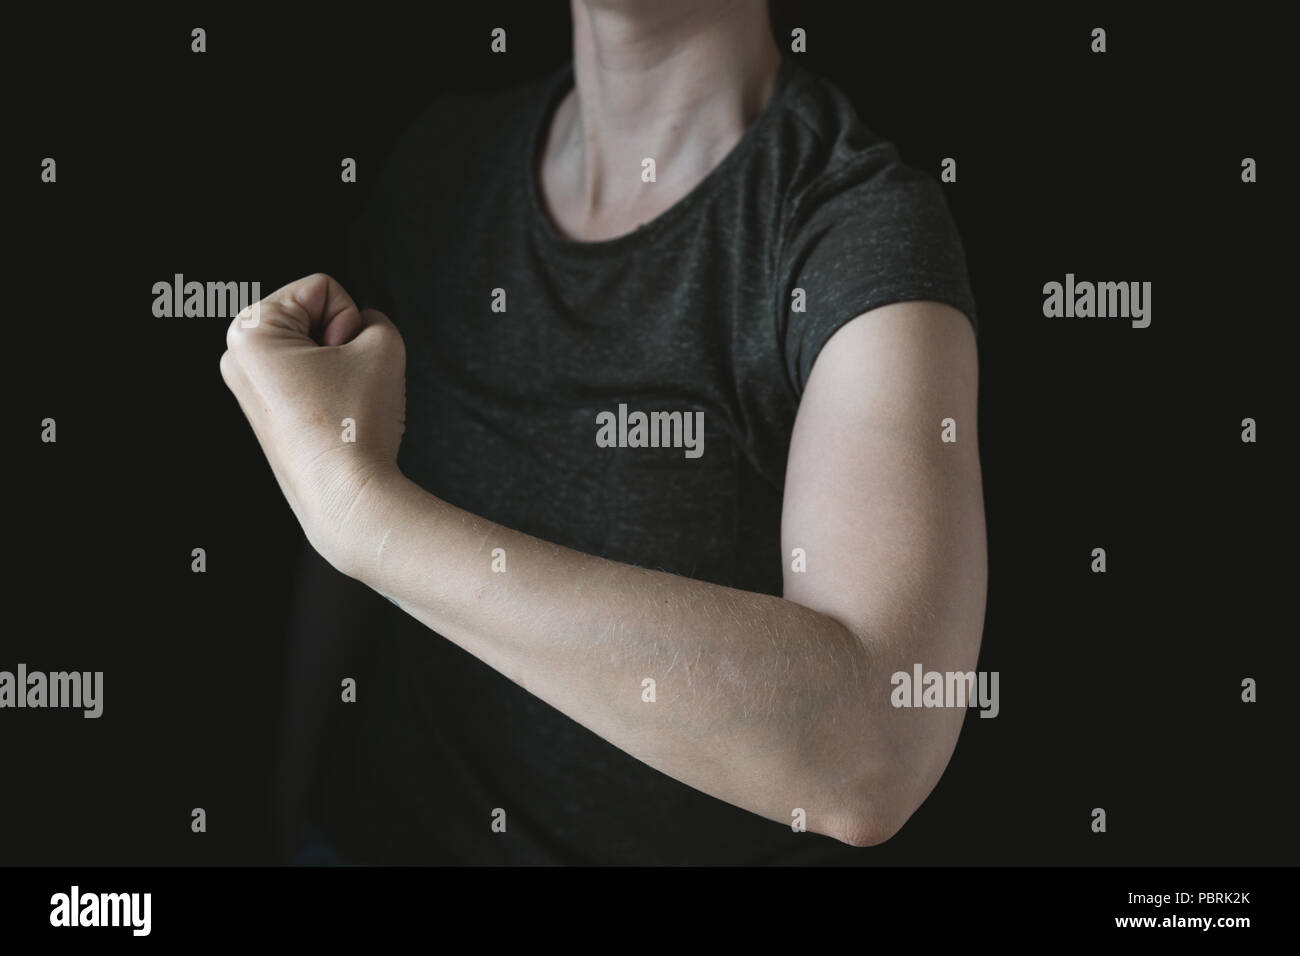 Imagen simbólica, el poder de la mujer, feminismo, mujer con tensa los músculos del brazo, fondo negro, foto de estudio Foto de stock